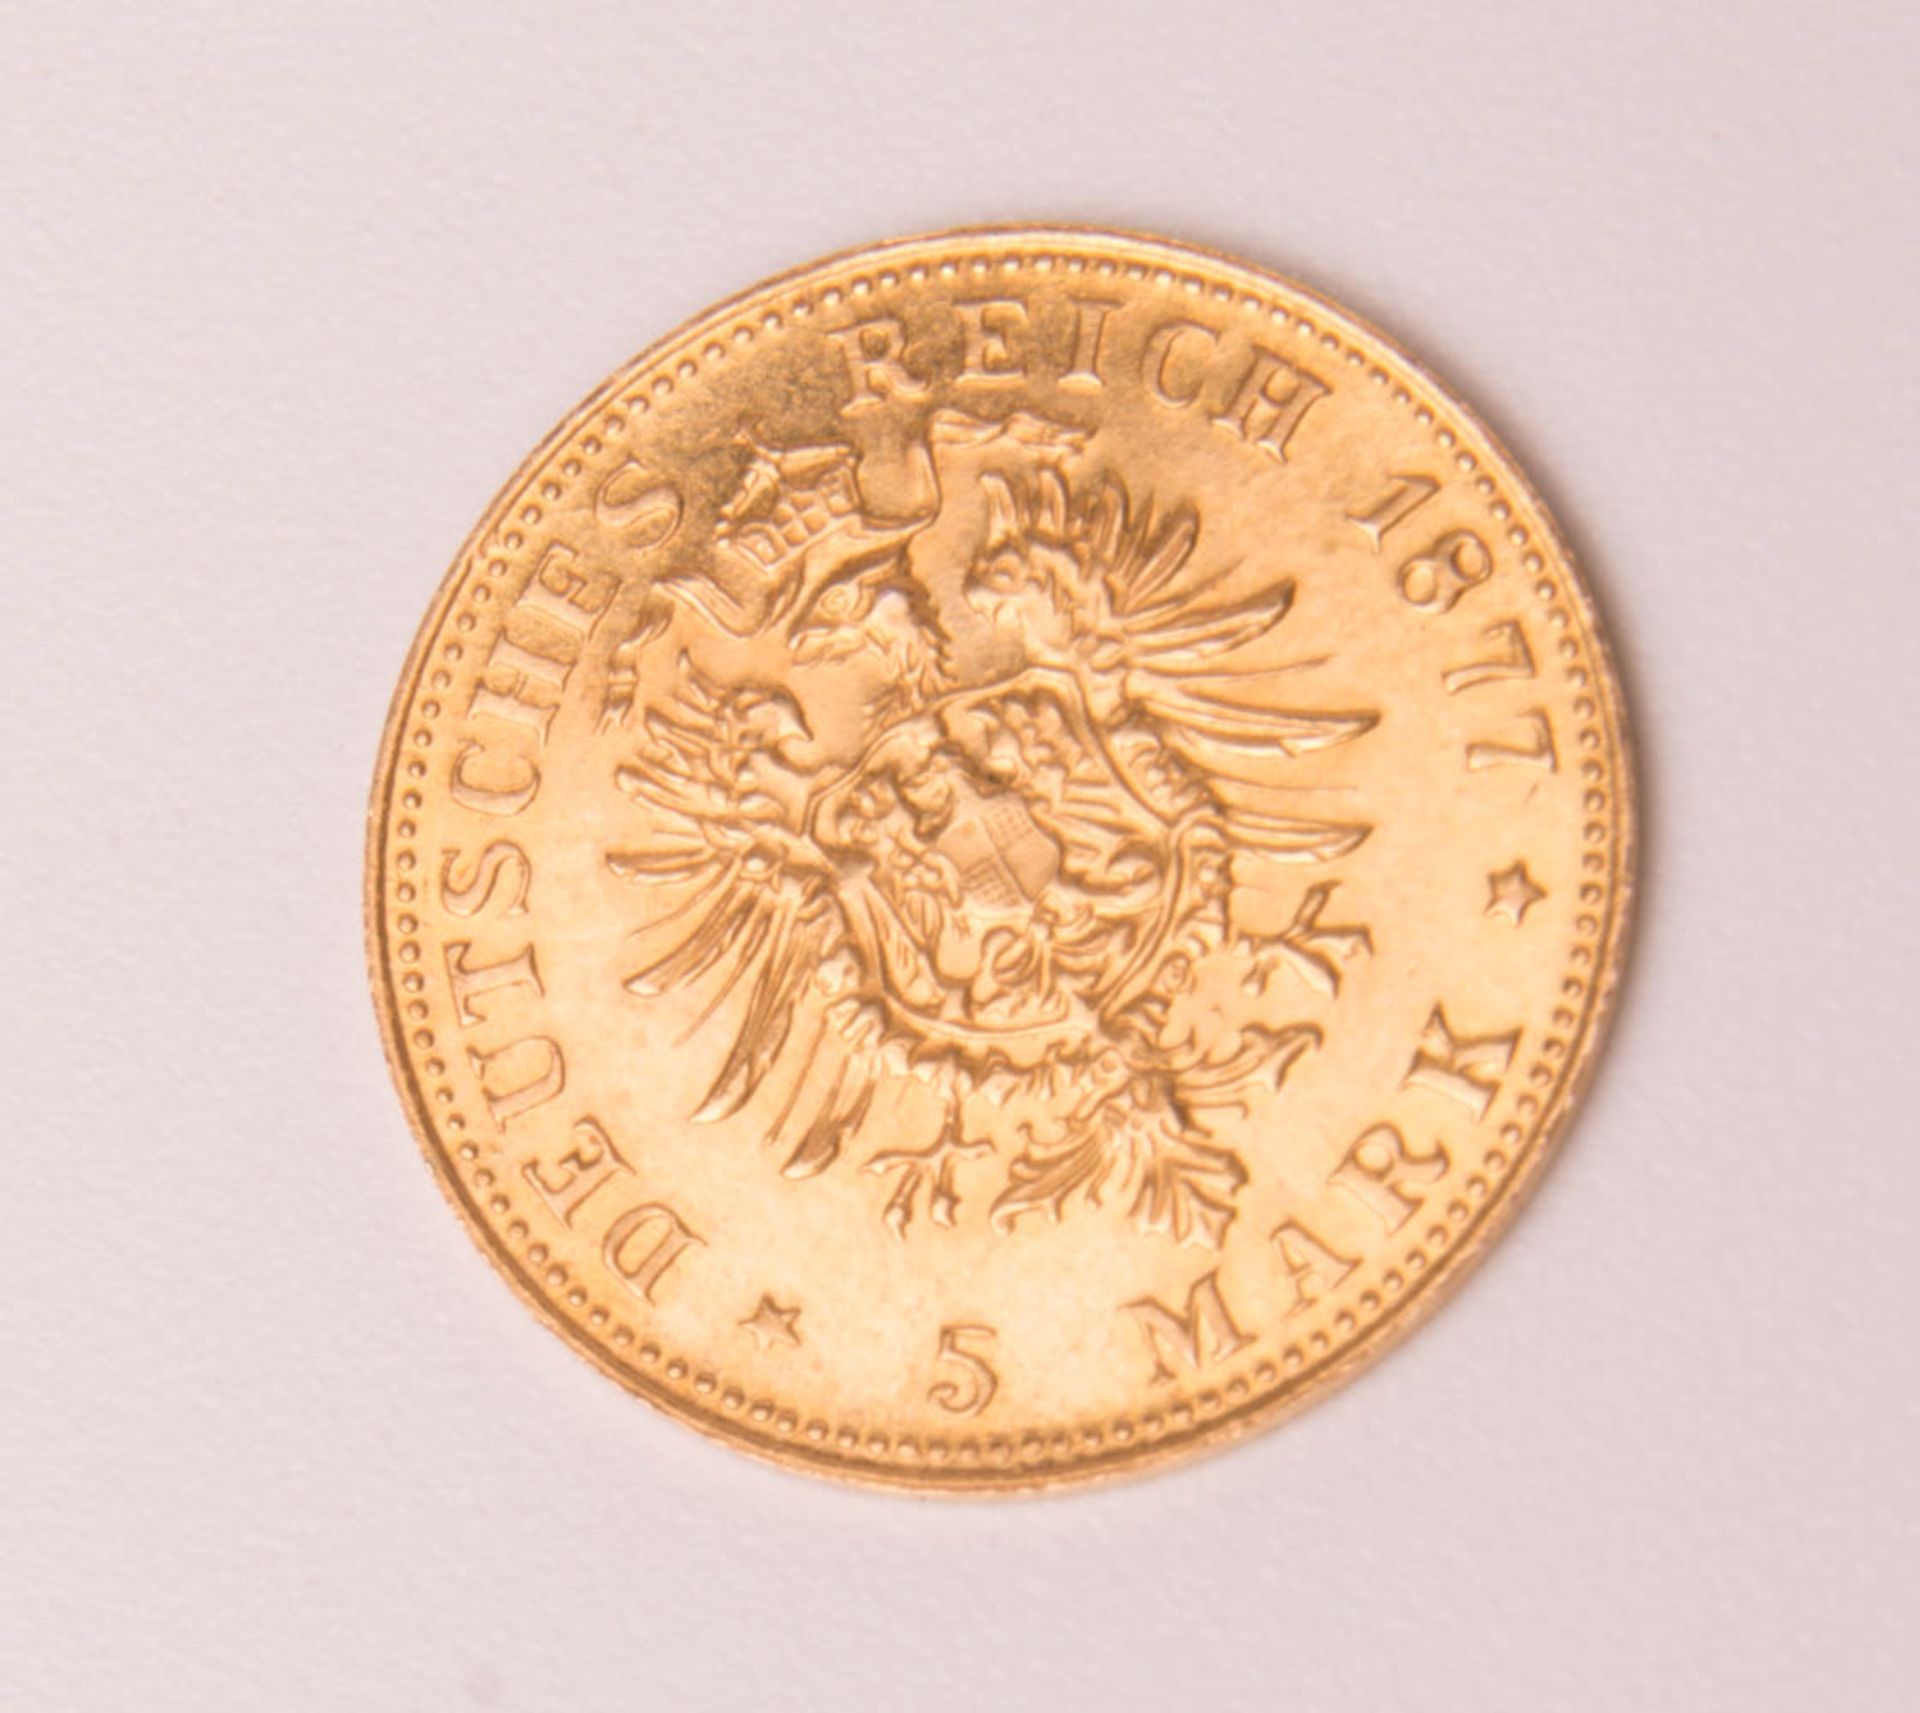 Goldmünze 5 Mark, Preussen, 1877, Nachprägung. - Bild 2 aus 2